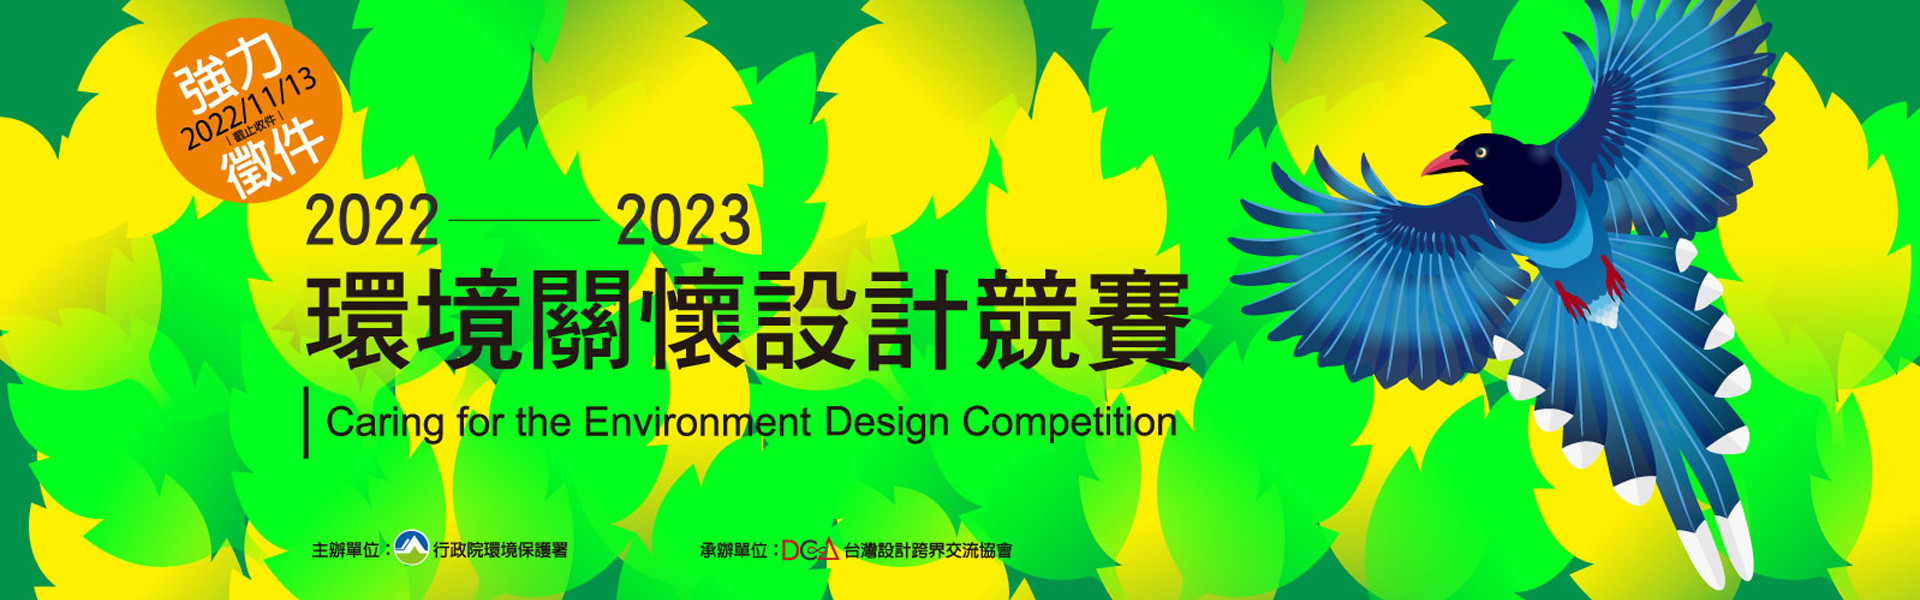 【競賽資訊】2022-2023環境關懷設計競賽